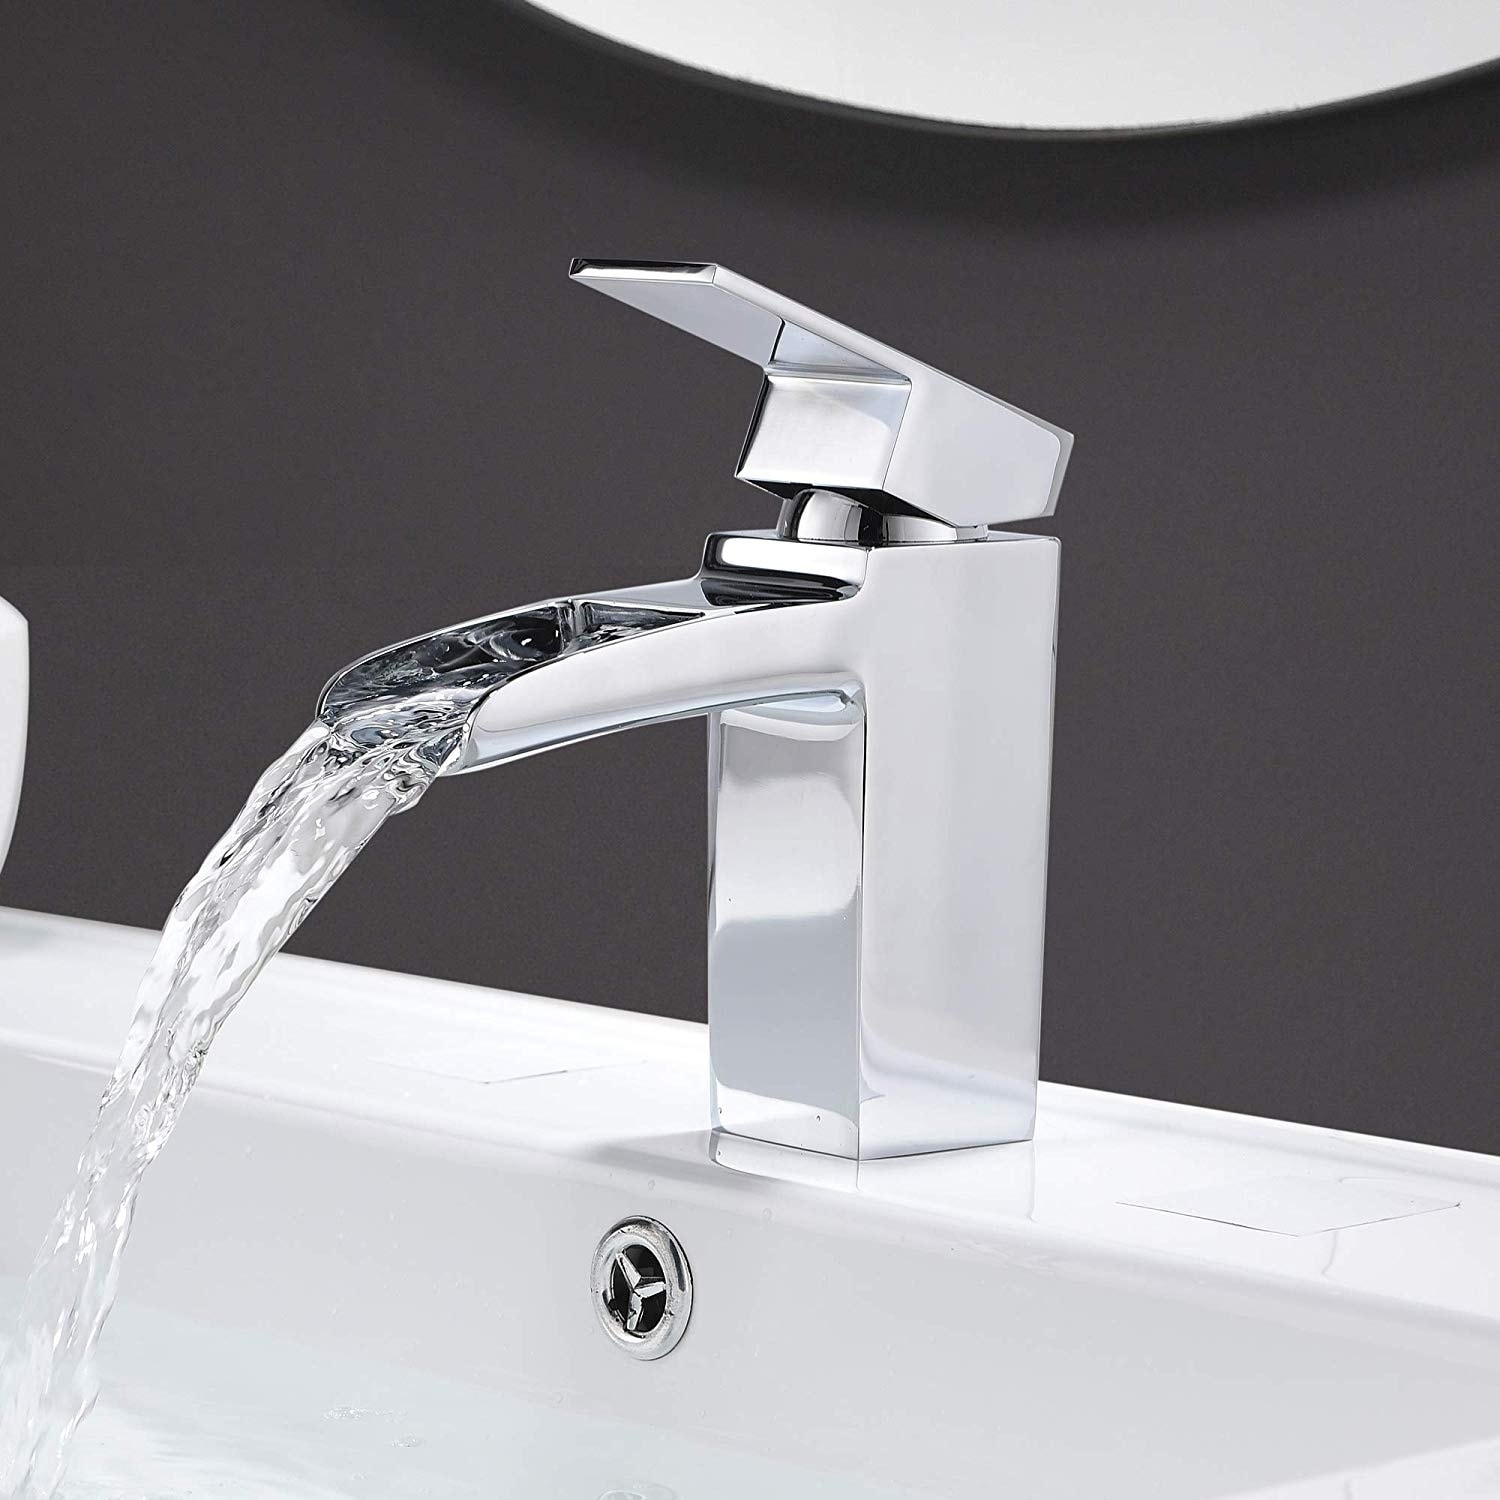 Vanity Art 6 Inch Waterfall Spout Bathroom Vessel Sink Faucet Single Handle Single Hole Basin Tap Deck Mount